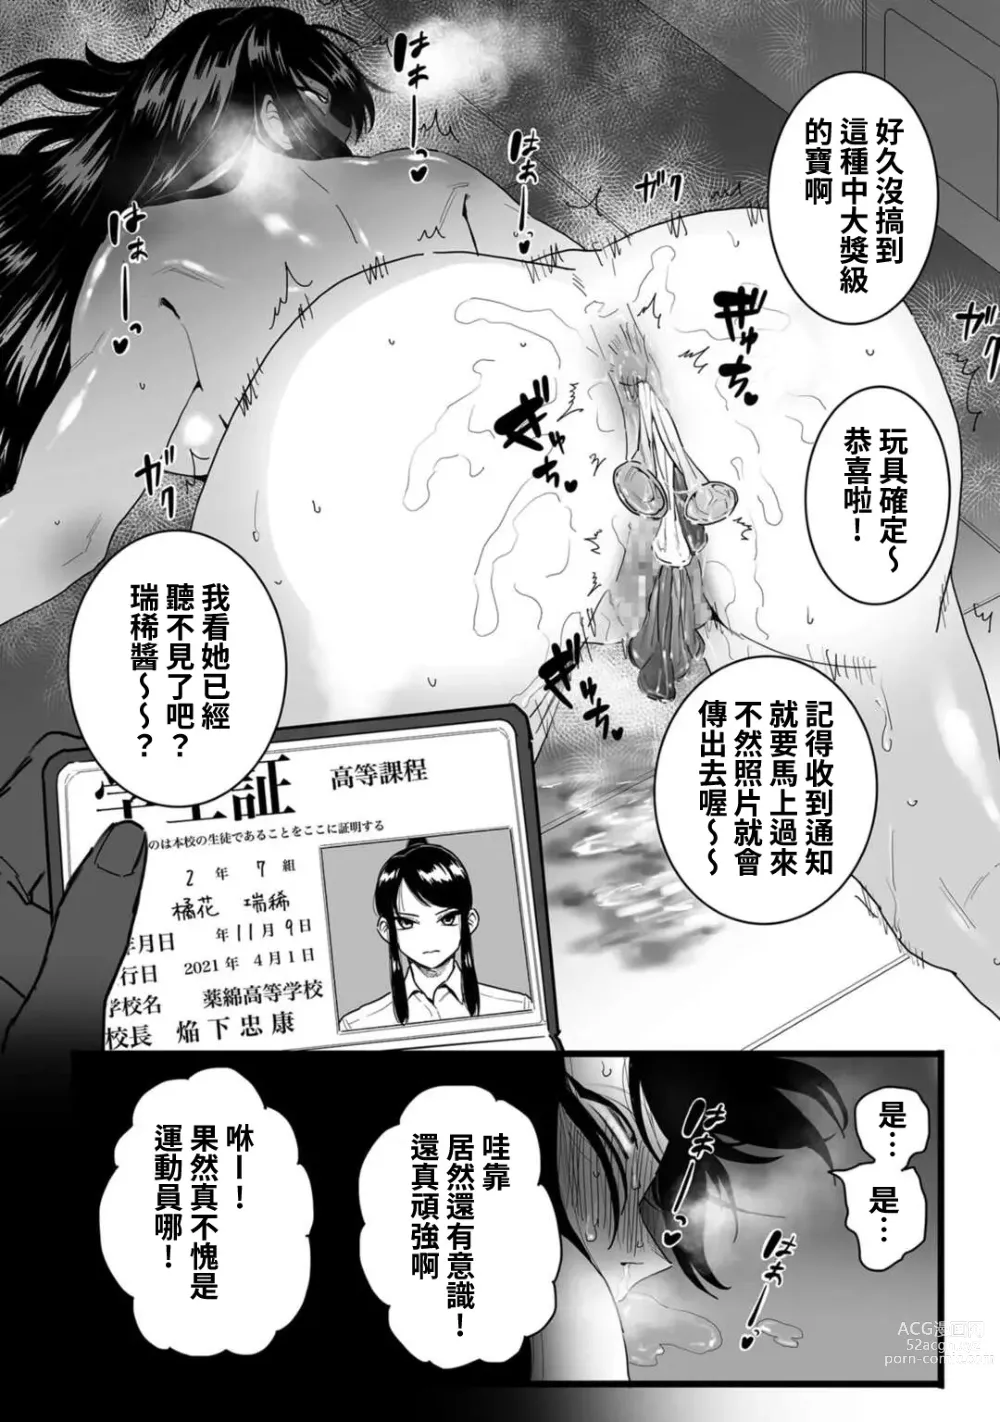 Page 12 of manga Shushou, Otsu!